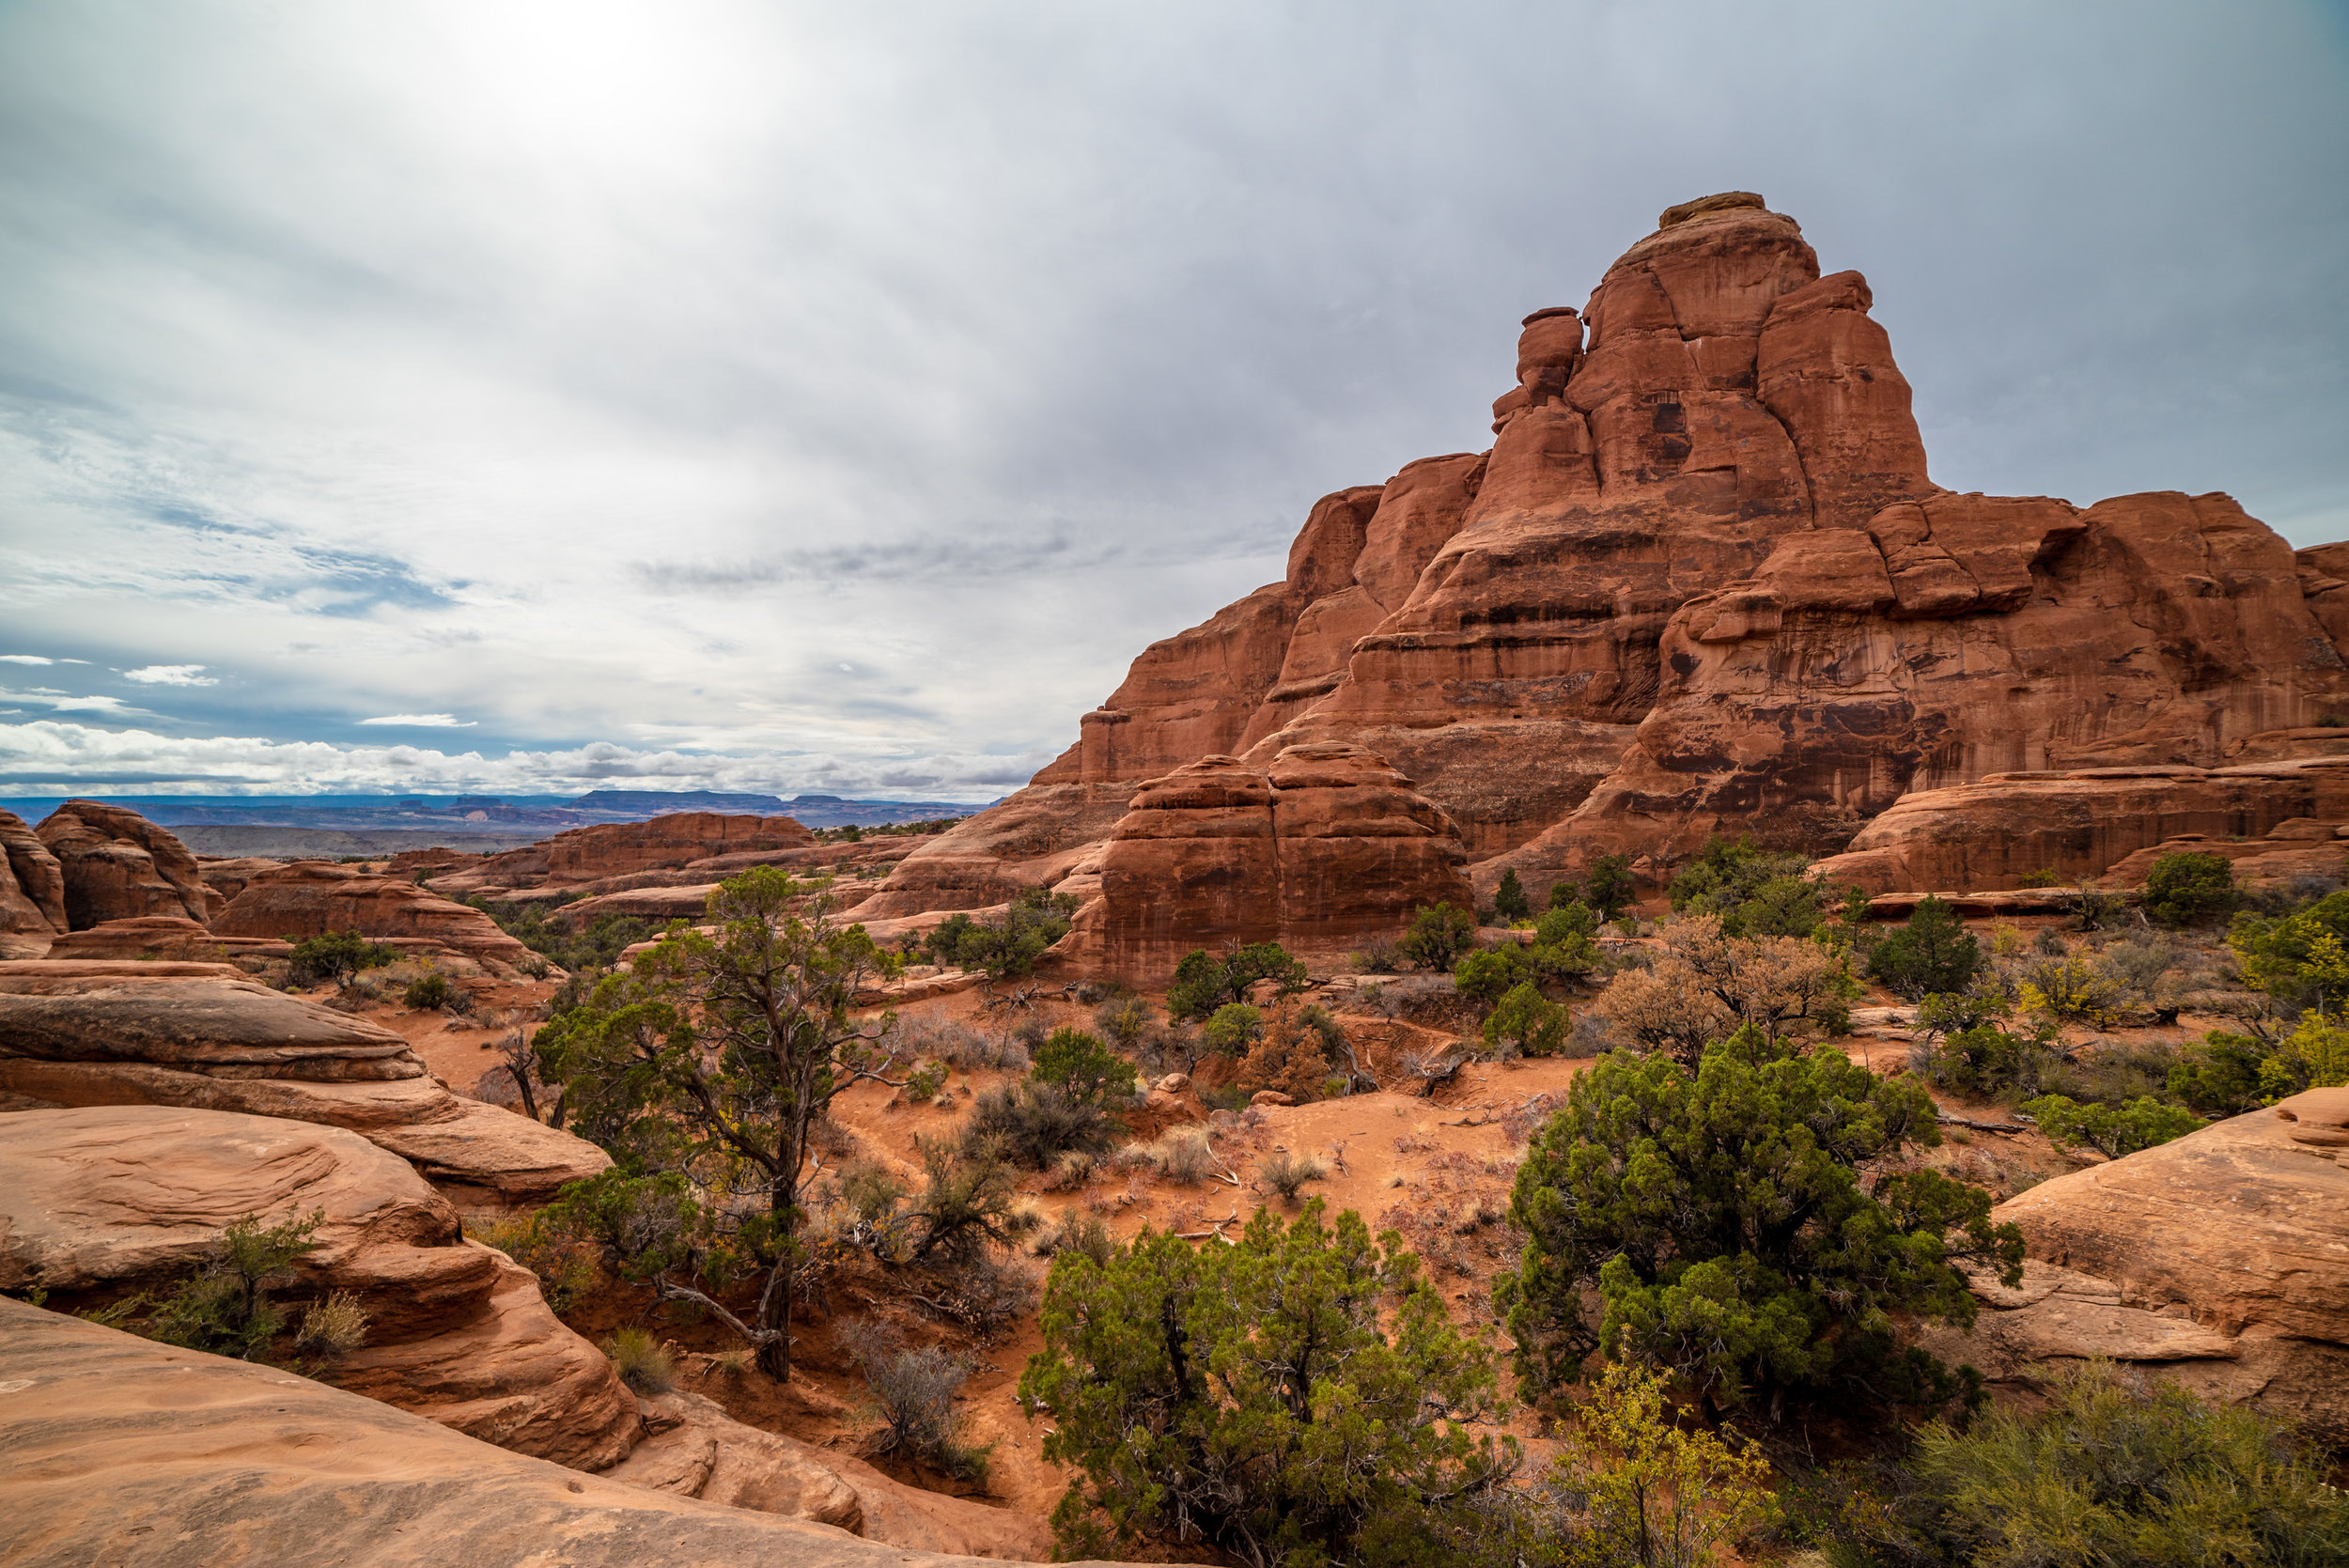 The Navajo Sandstone